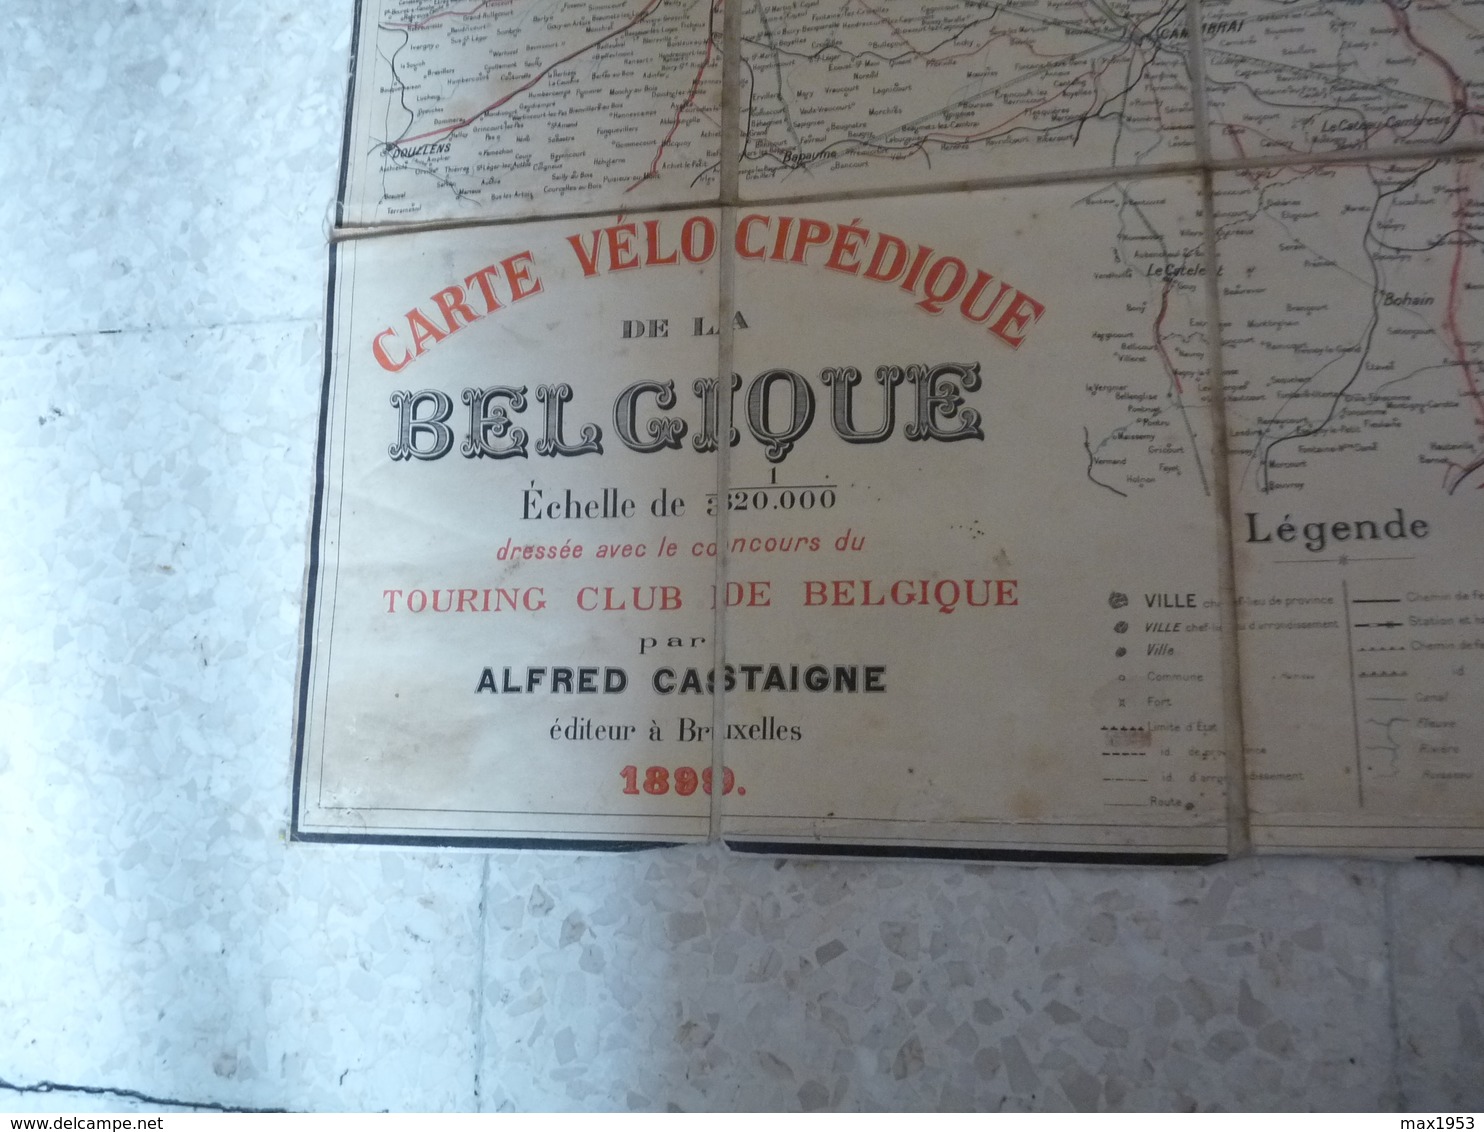 CARTE VELOCIPEDIQUE DE LA BELGIQUE - 1899 - Toilée - Guides Et Plans Castaigne - Cartes Routières